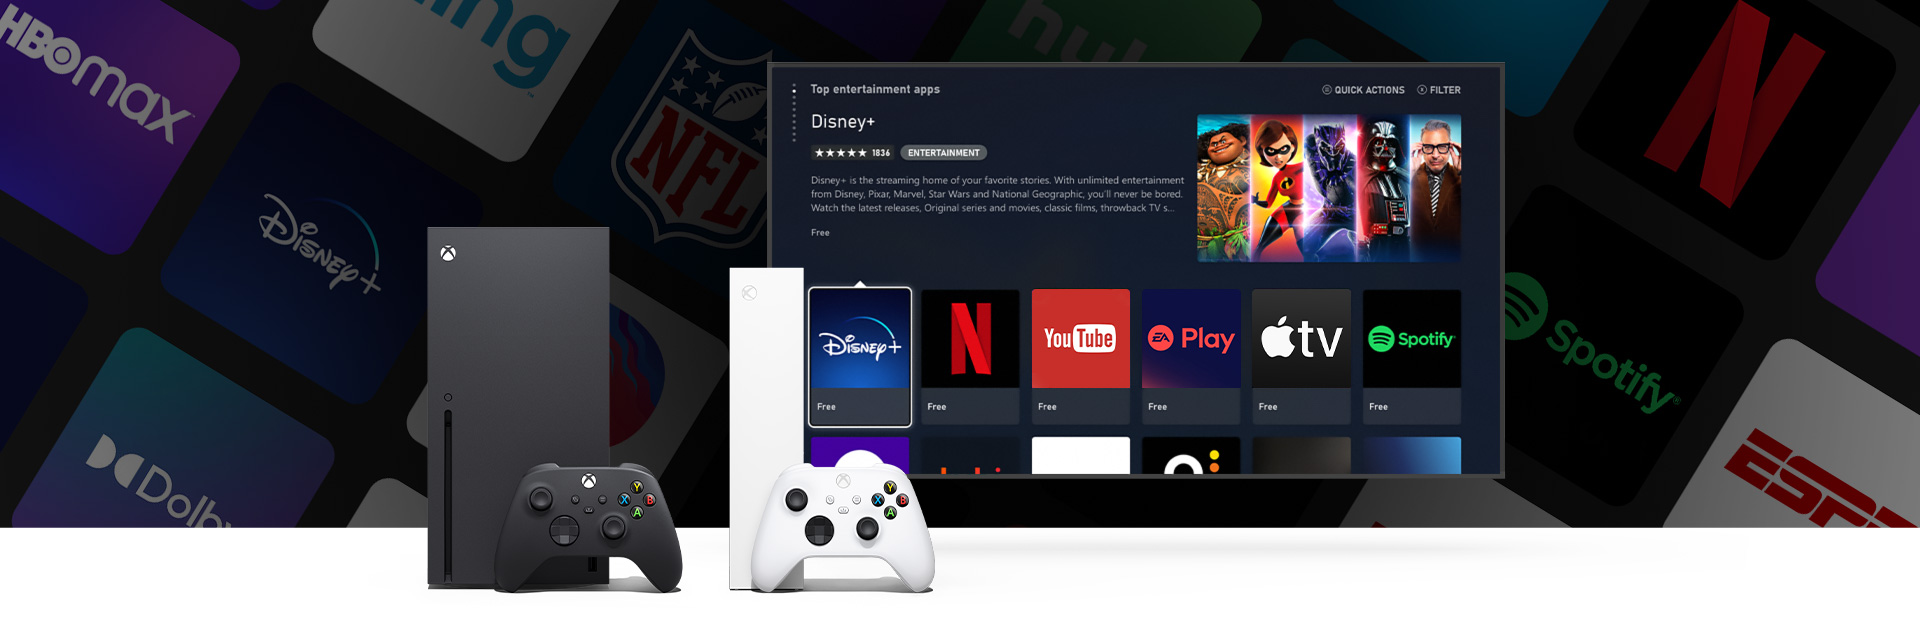 Konzole Xbox Series X a Series S s ovladači před televizní obrazovkou s uživatelským rozhraním s dostupnými mnoha aplikacemi.